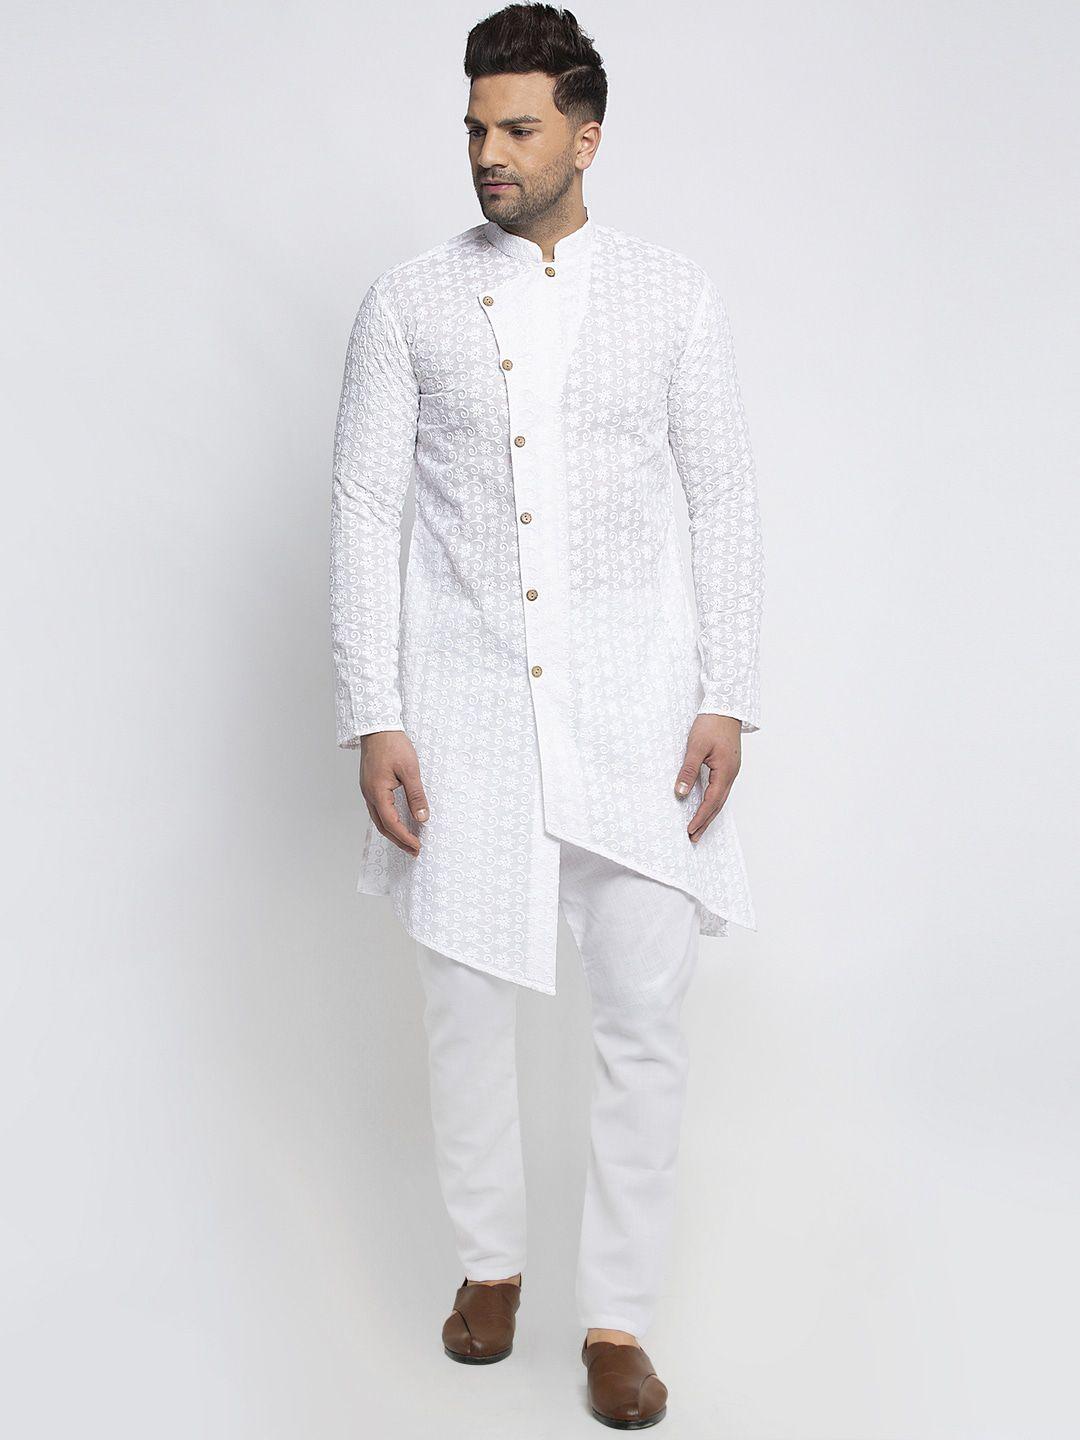 TREEMODA Men White Chikankari Embroidered Pure Cotton Kurta with Pyjamas